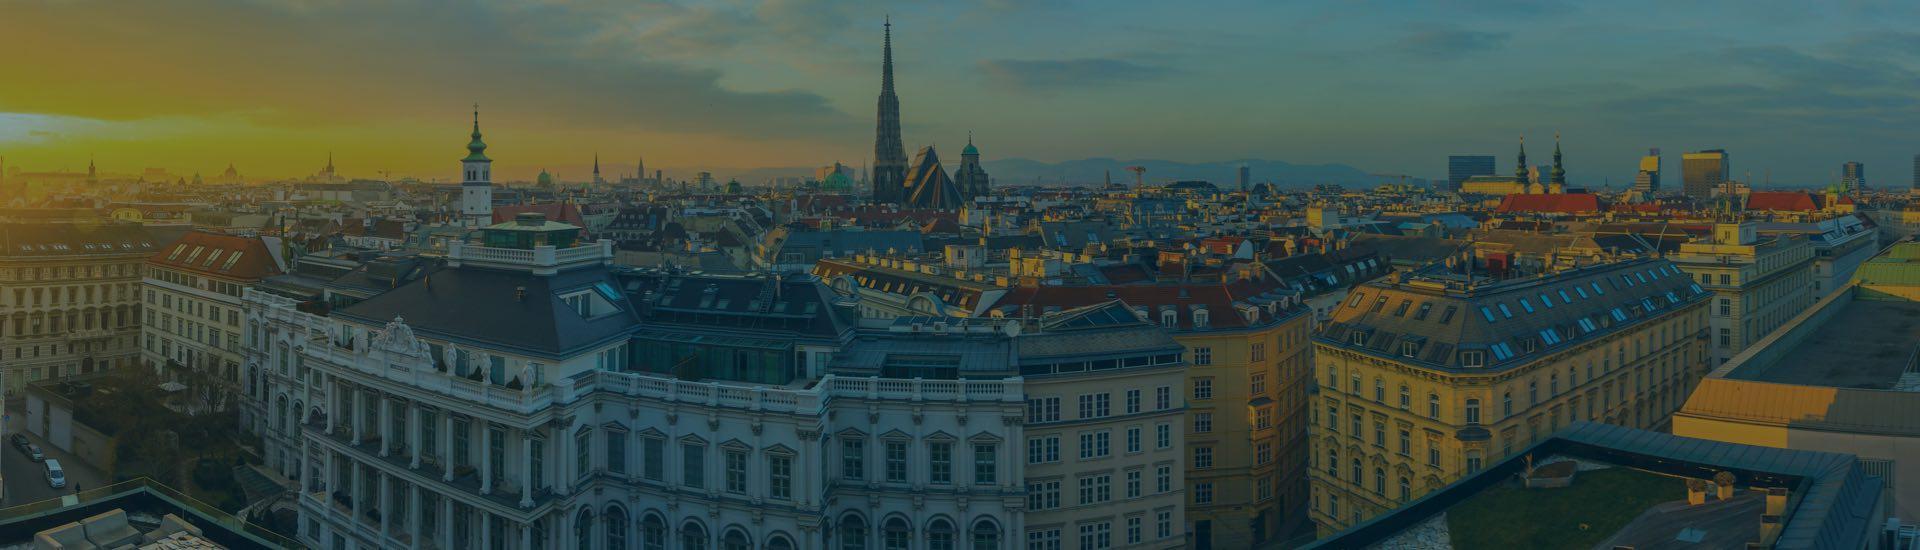 ابحث عن أفضل الفنادق في فيينا